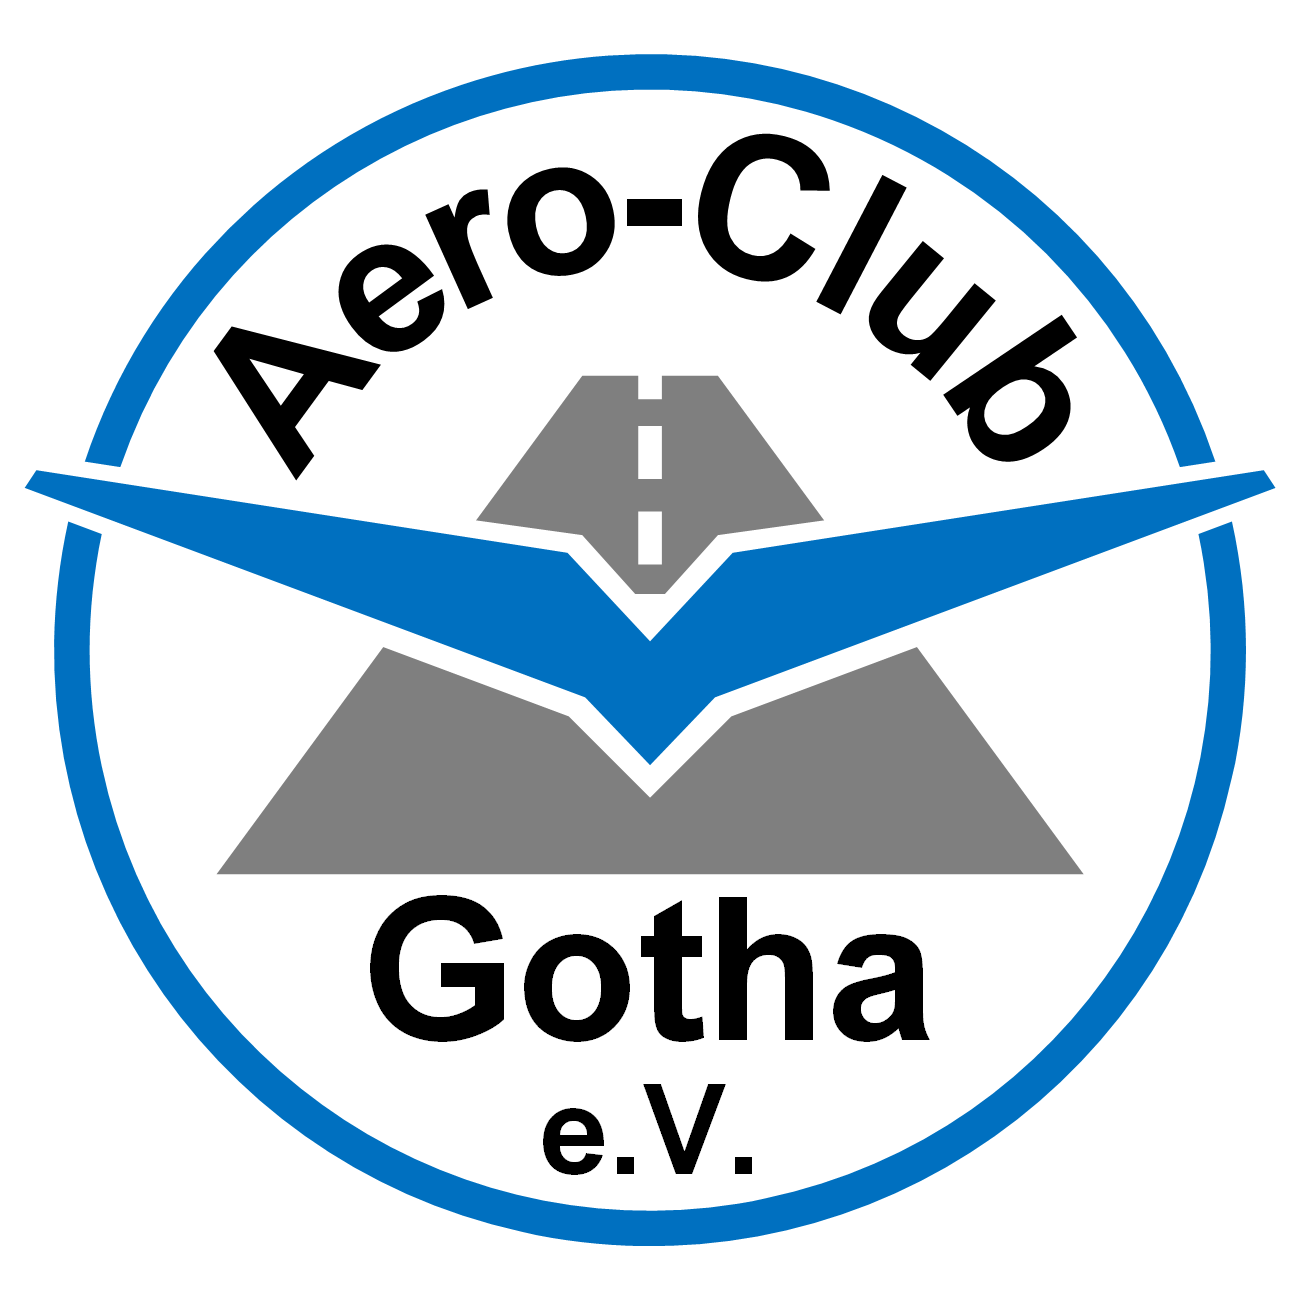 (c) Aero-club-gotha.com